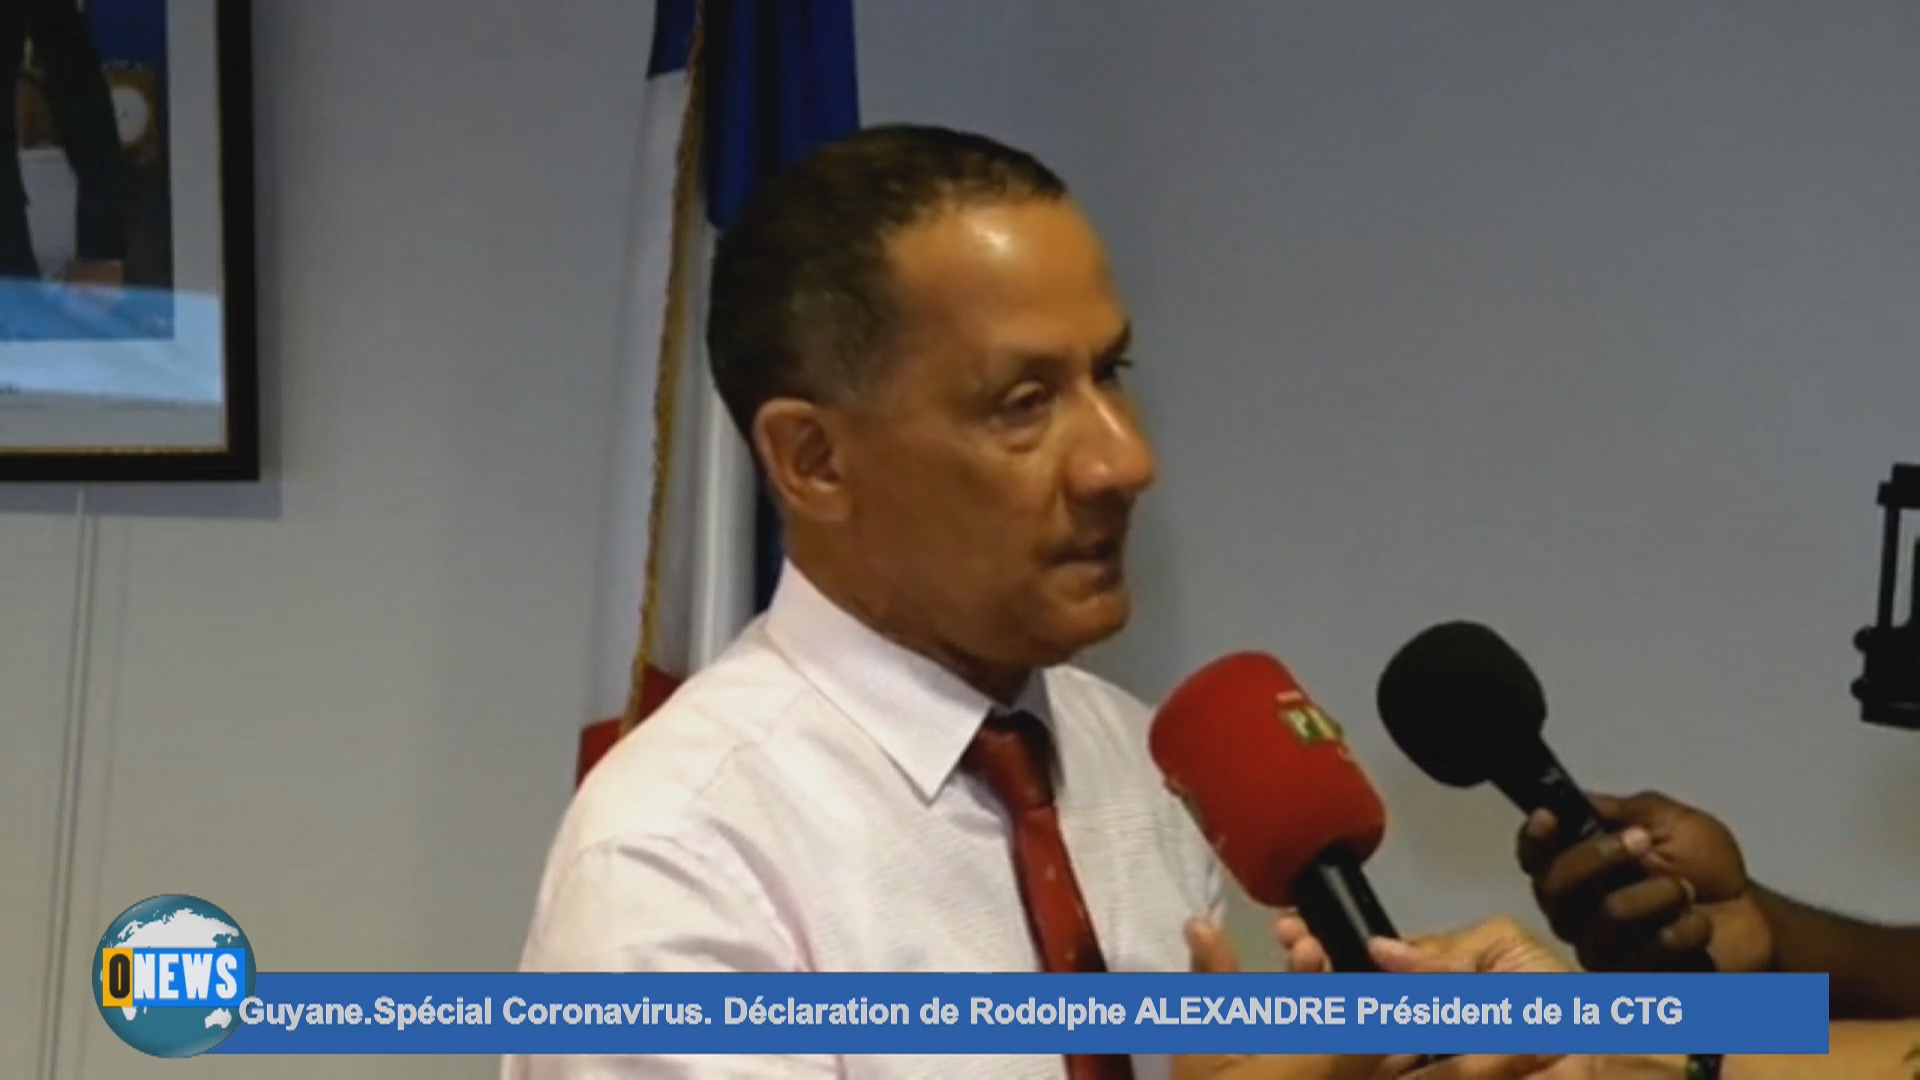 [Vidéo] Onews Guyane coronavirus. Déclaration de Rodolphe ALEXANDRE Président de la CTG